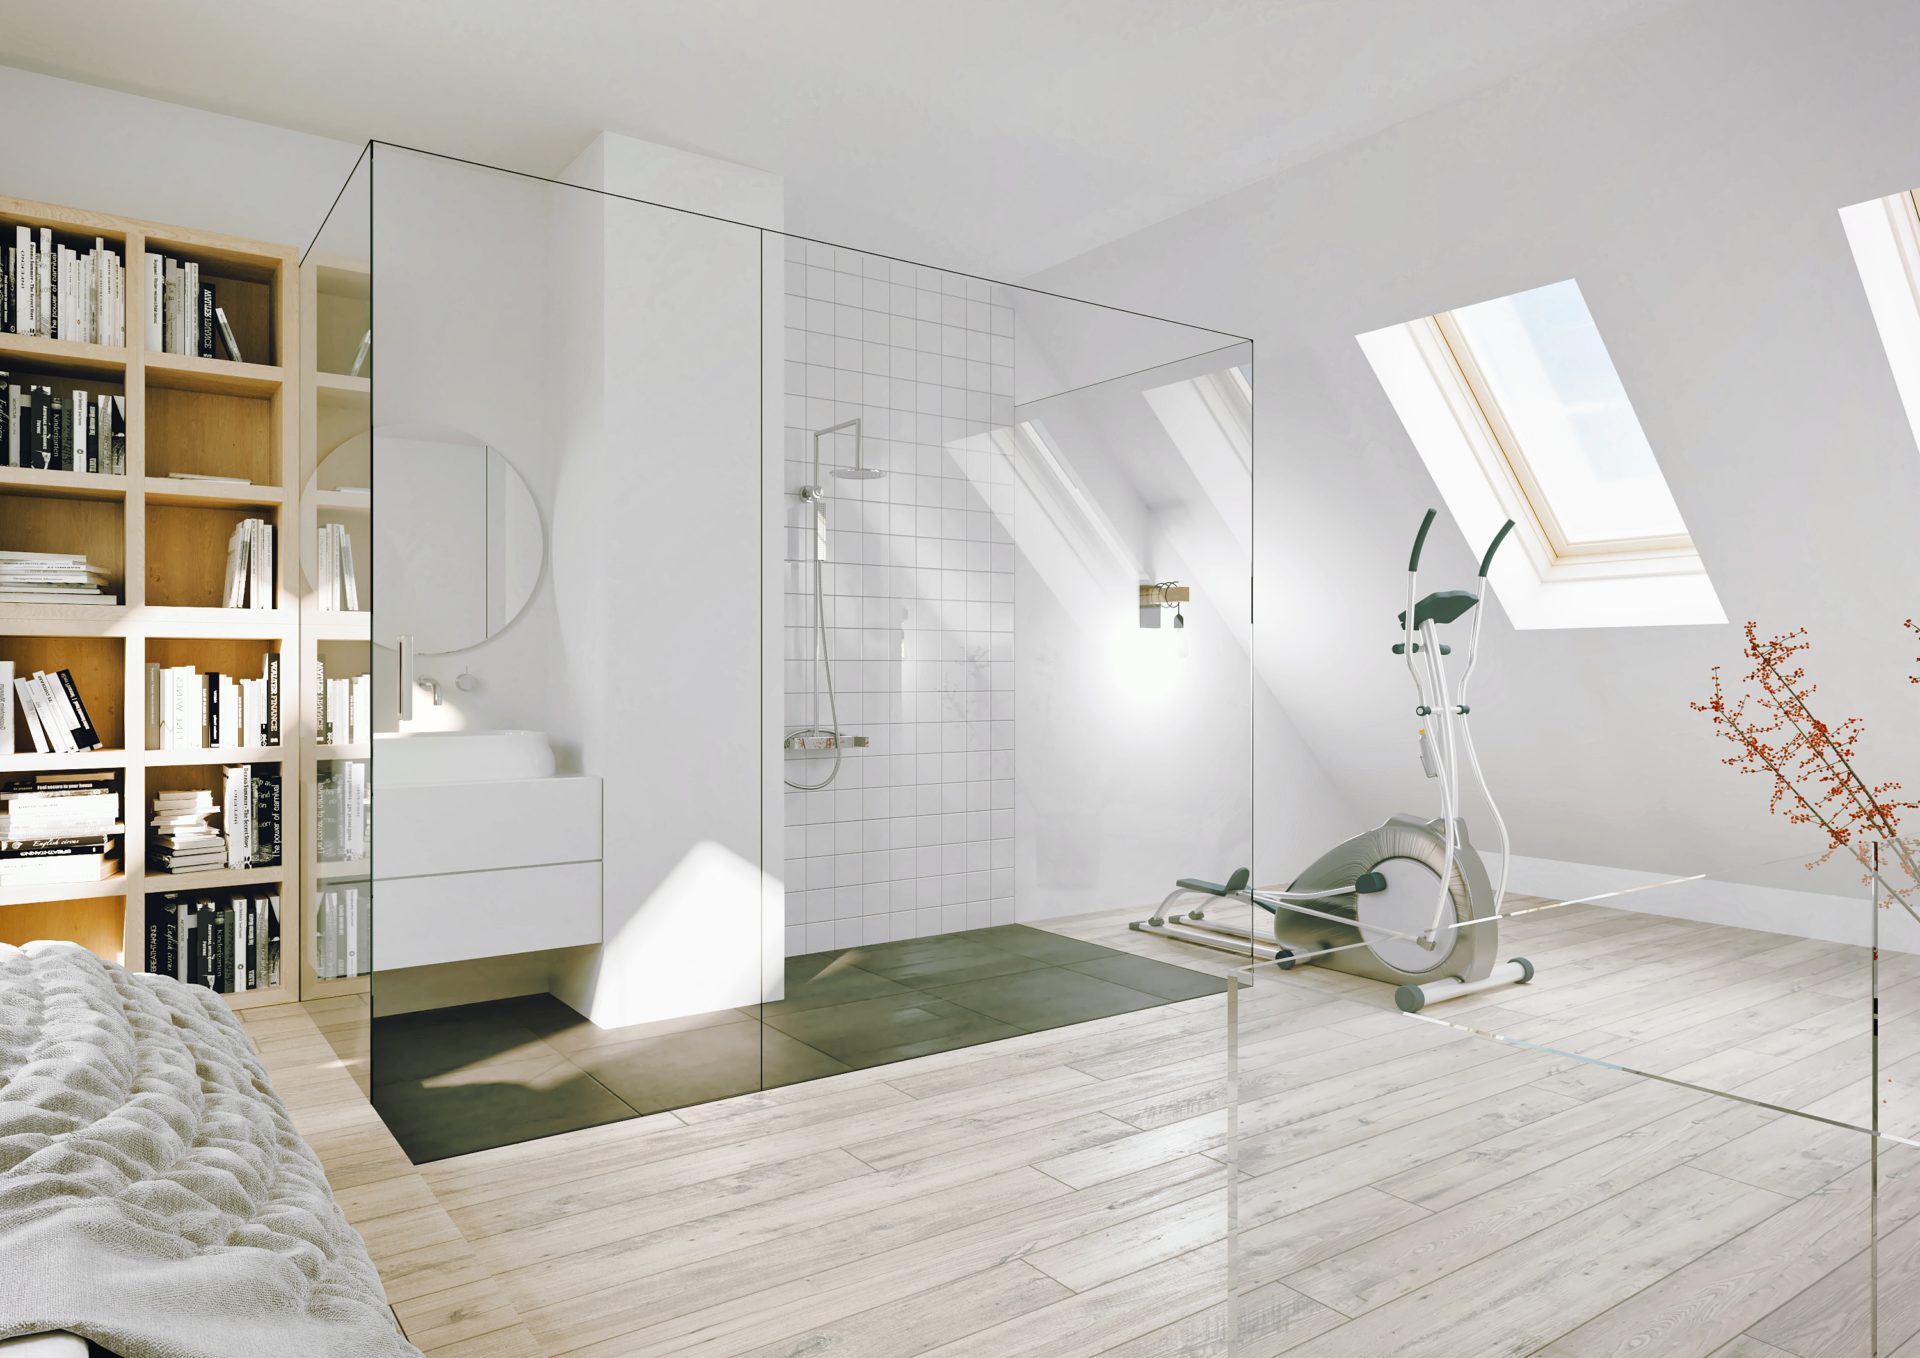 Projekt przestrzeni głównej sypialni rozbudowany o indywidualną łazienkę i prywatną siłownię.